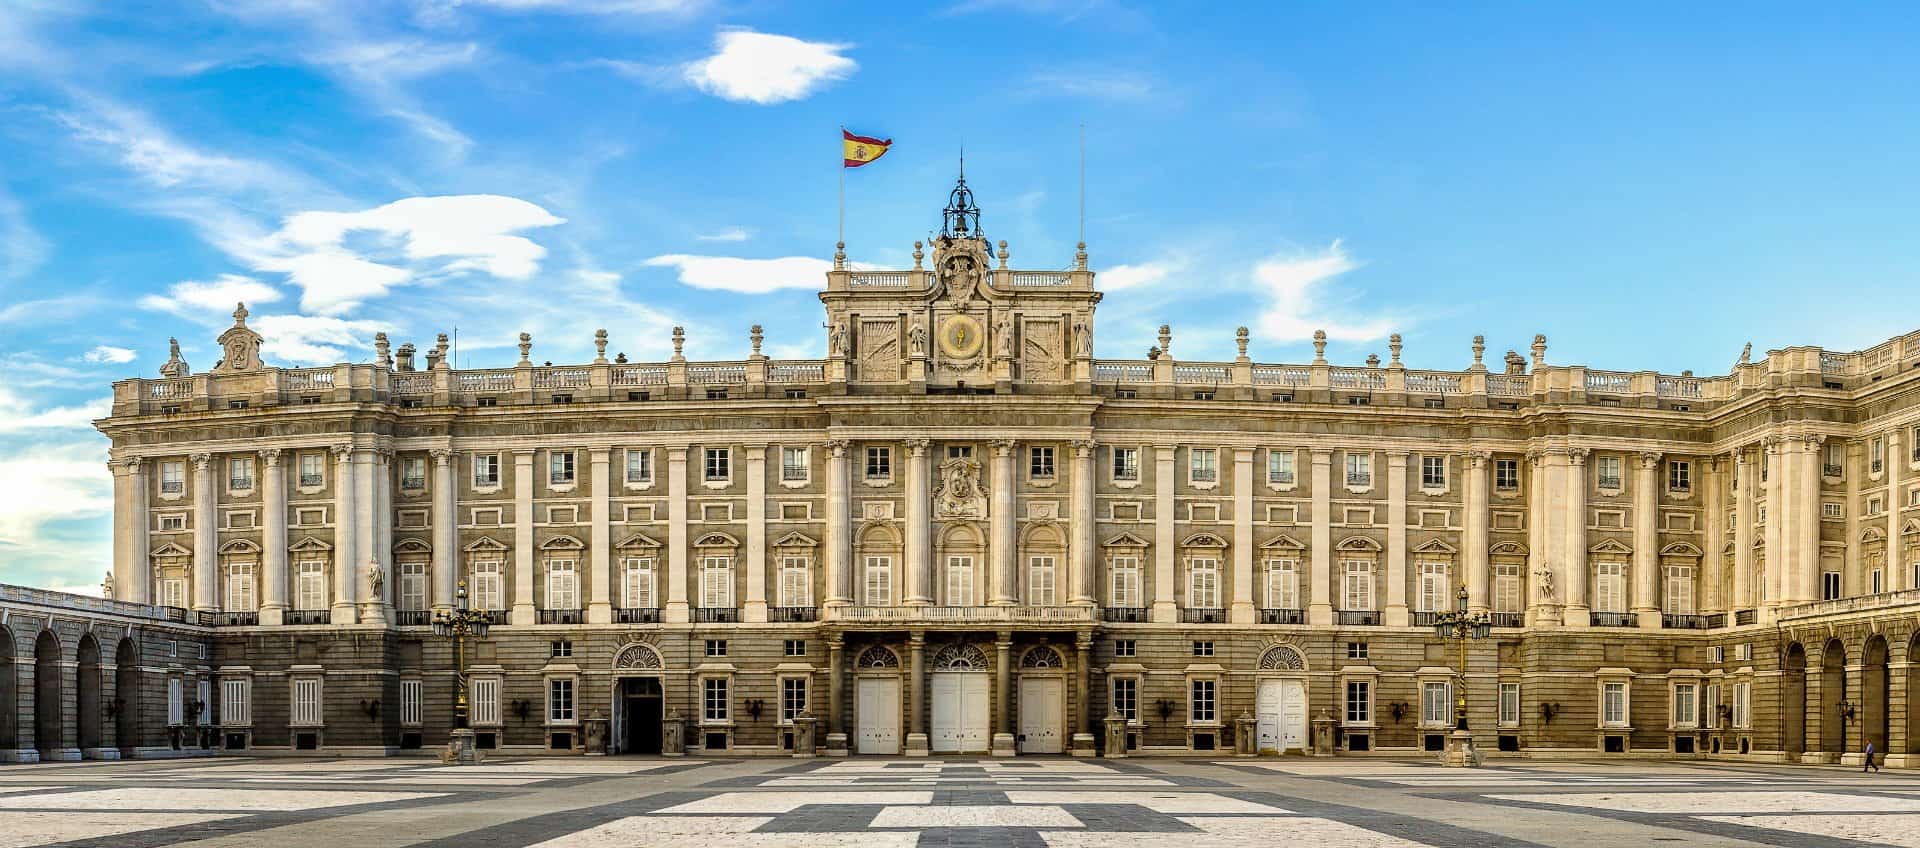 اهم 3 انشطة عند القصر الملكي في مدريد اسبانيا